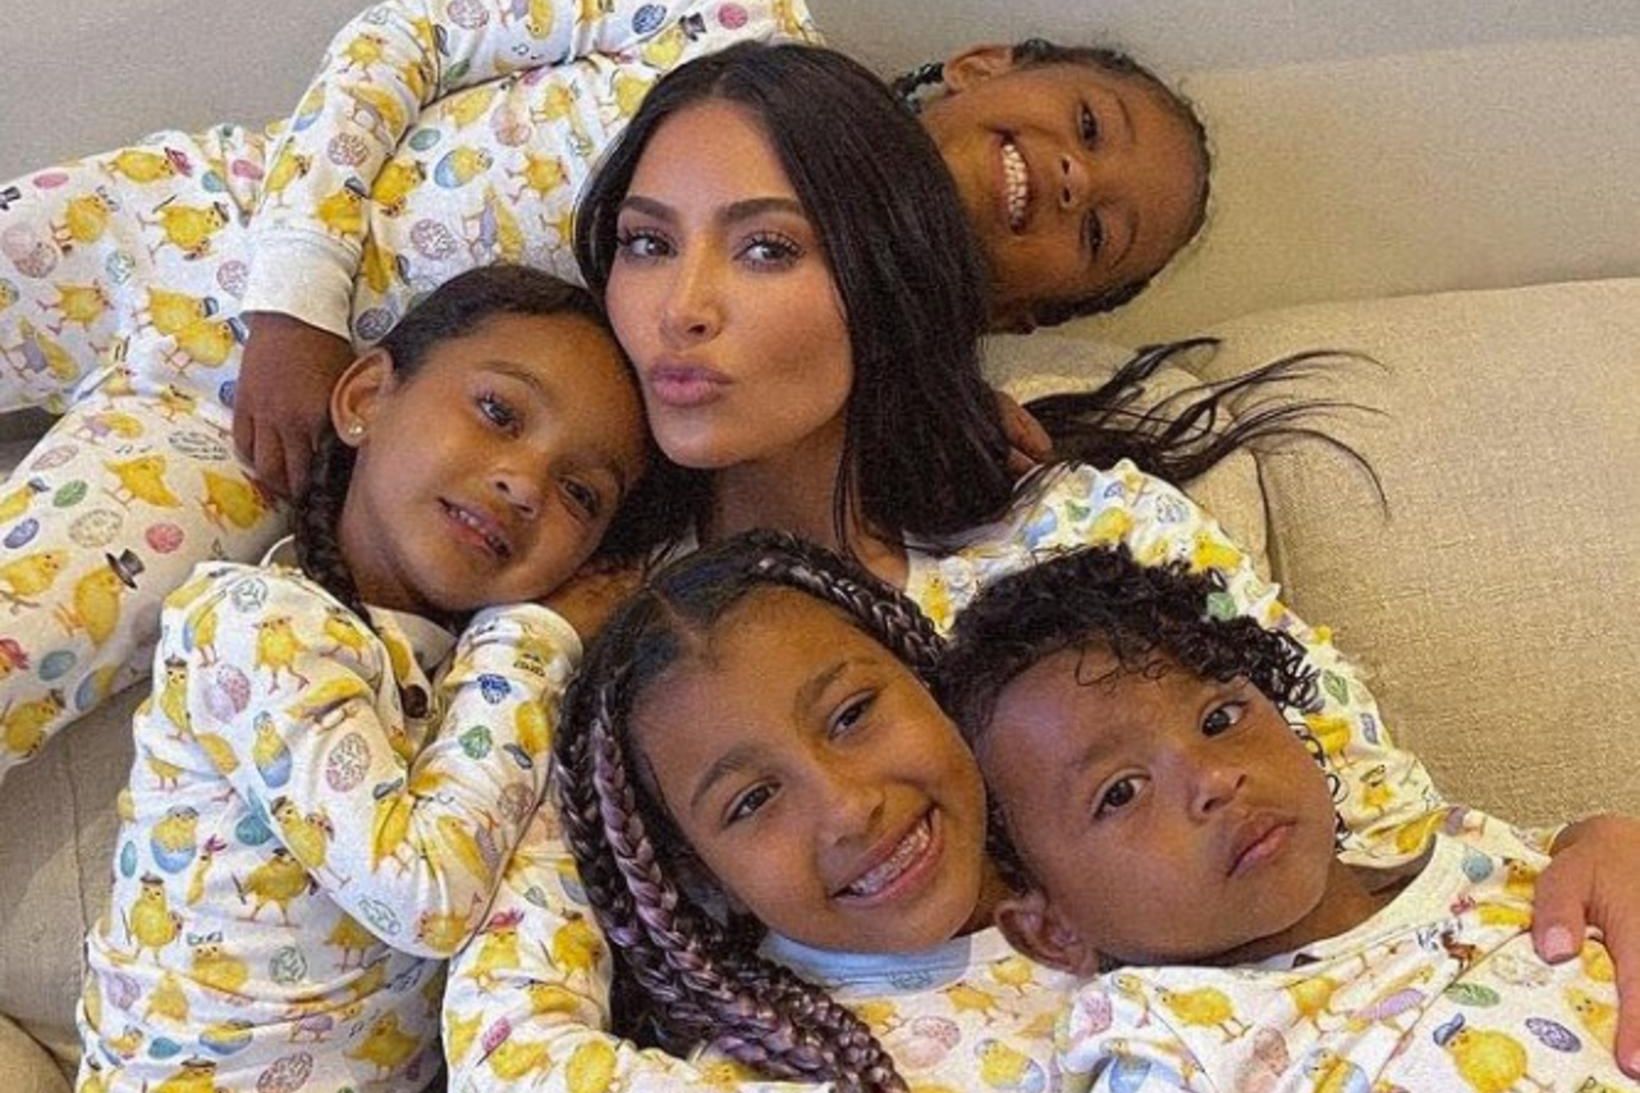 Kim Kardashian ásamt börnum sínum.